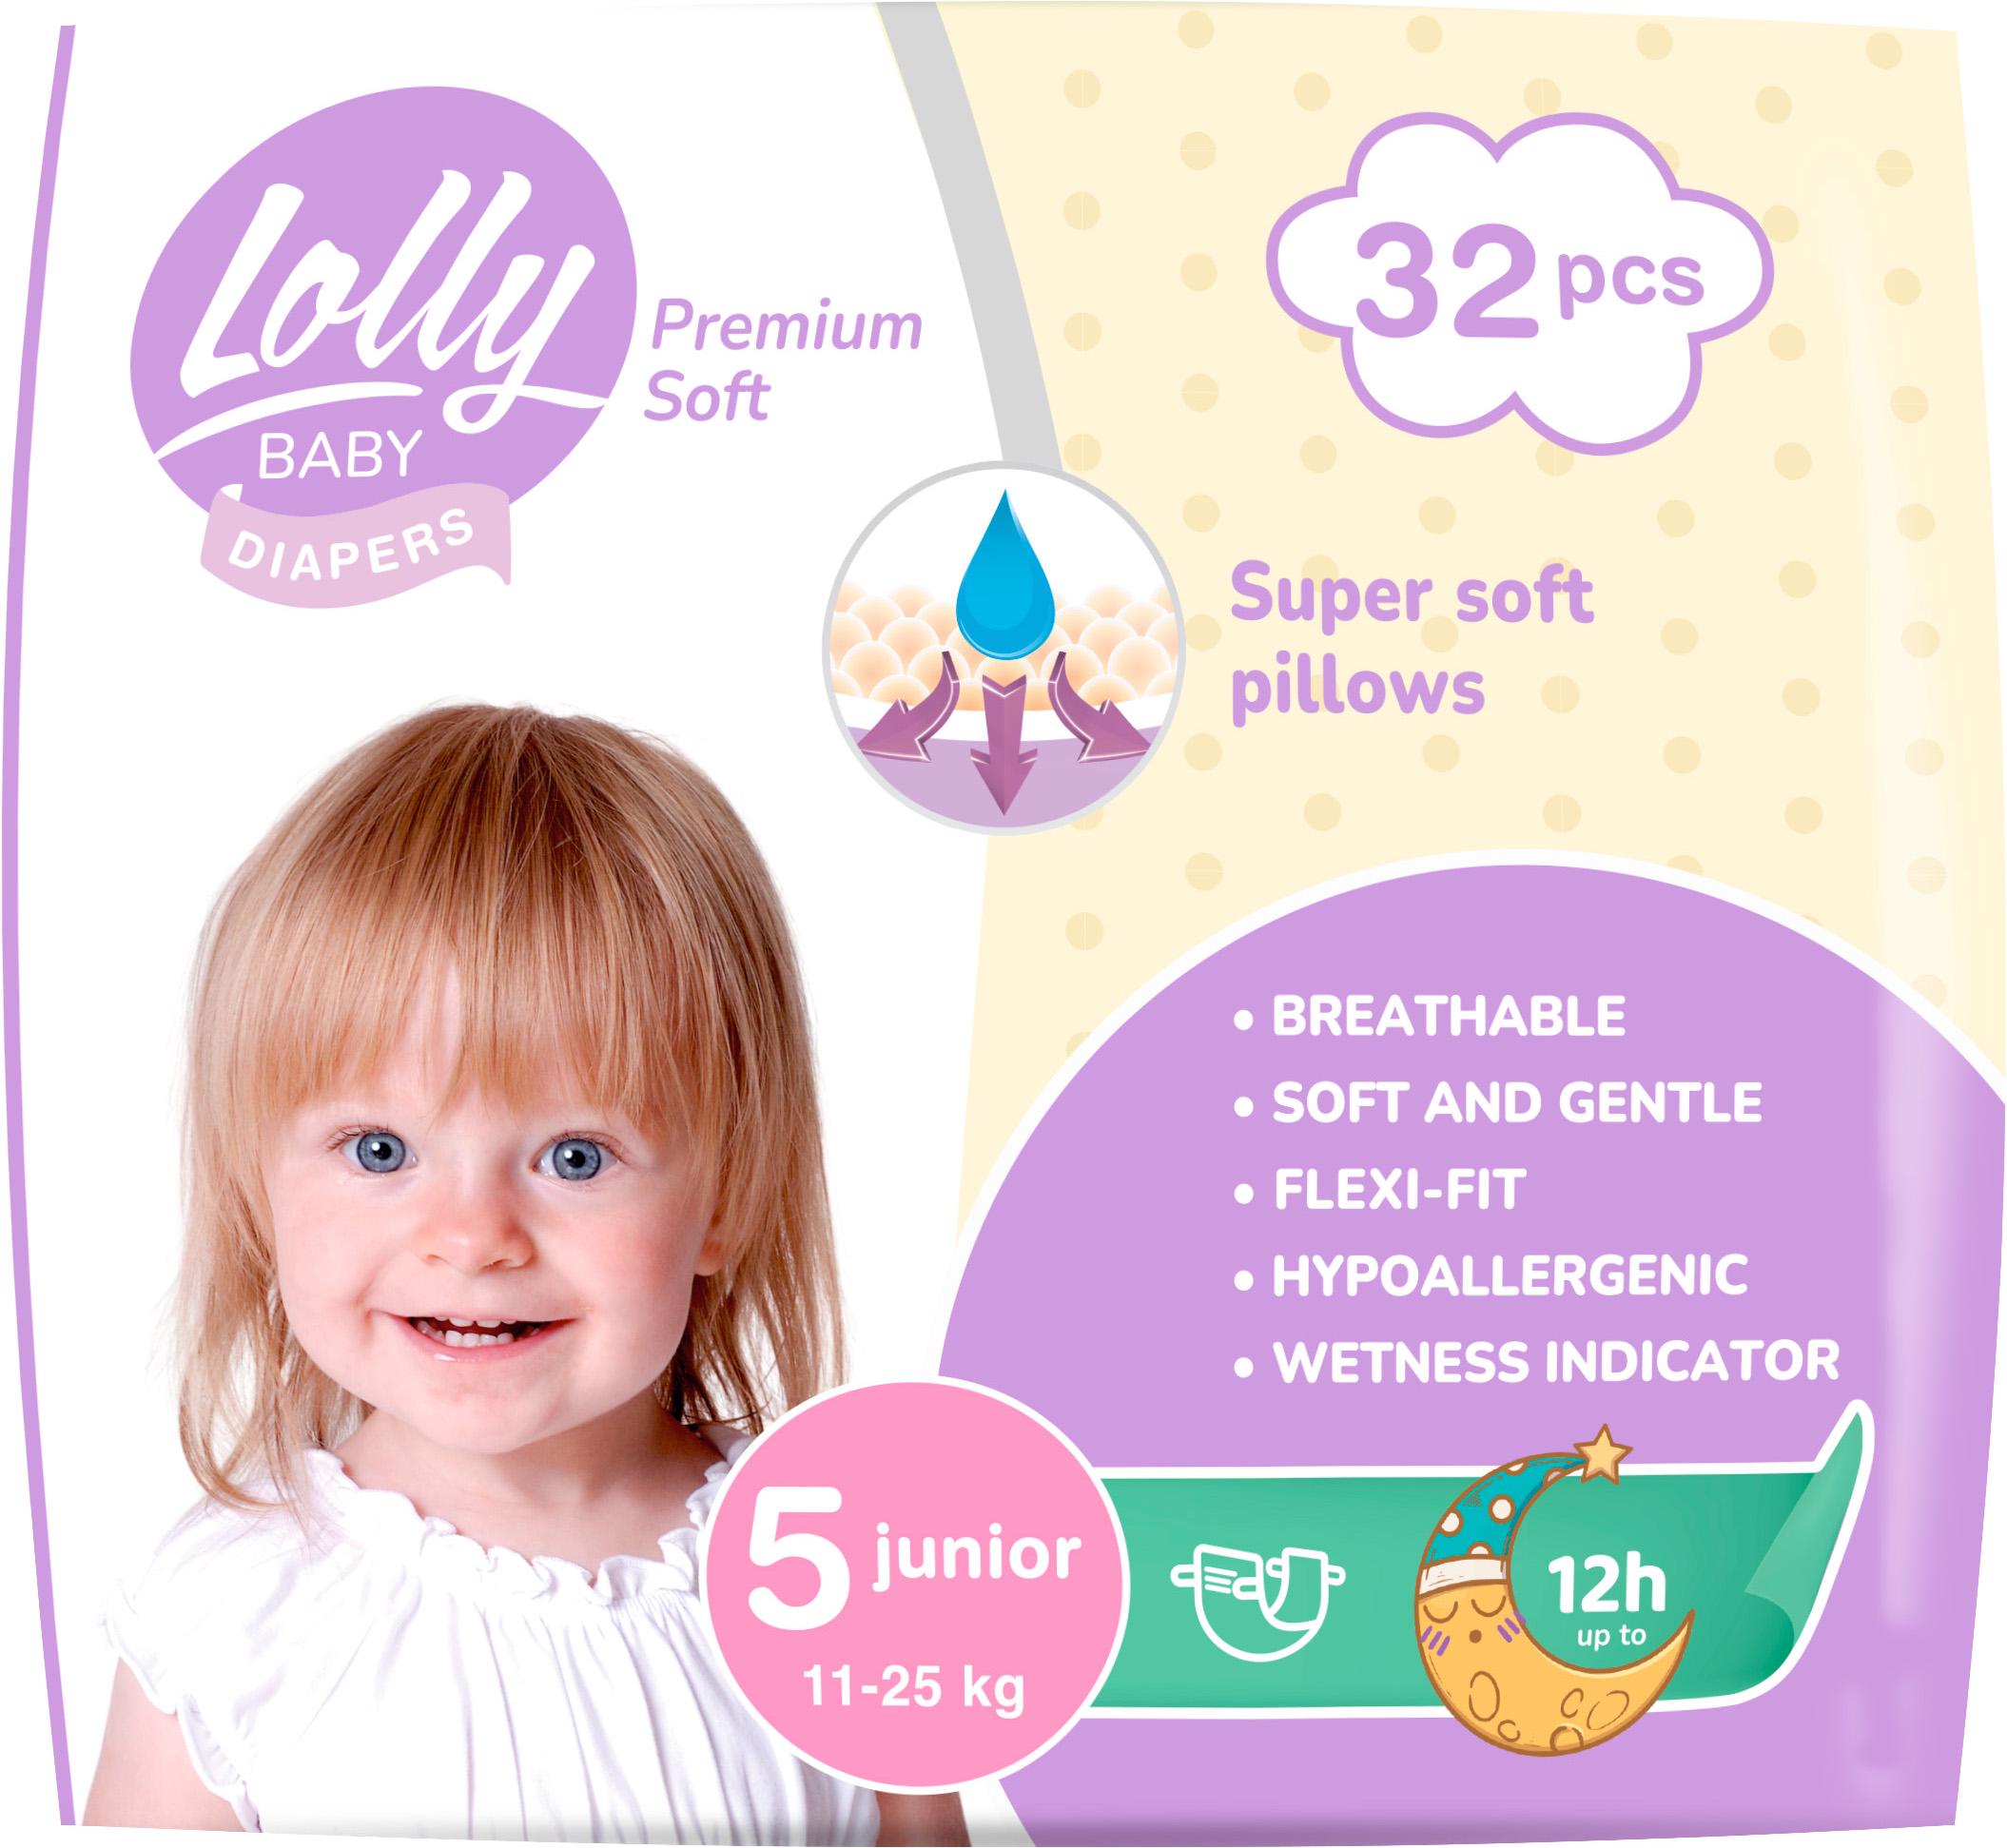 Підгузки дитячі Lolly Premium Soft 5 11-25 кг 32 шт. (14415)